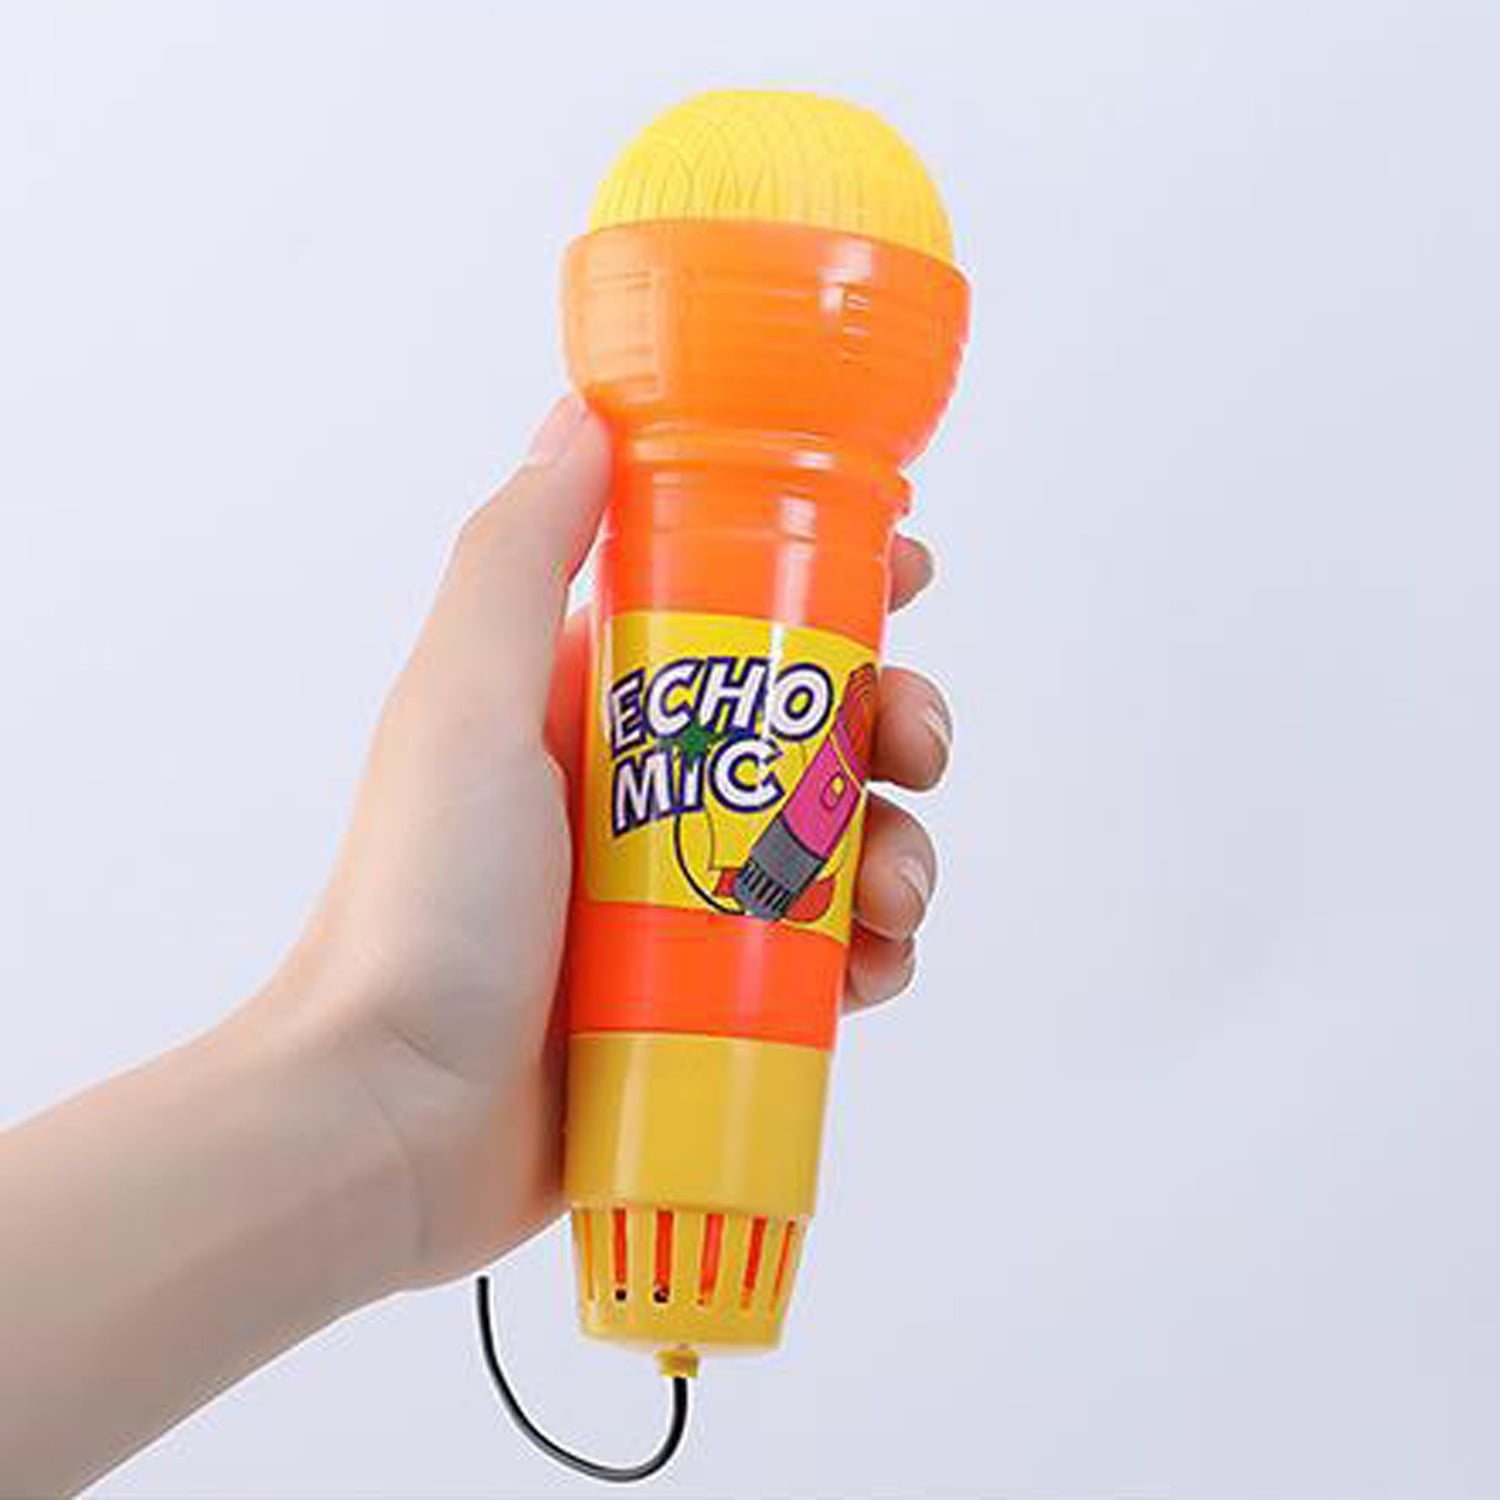 Rhode Island Novelty micrófono de juguete de 10 pulgadas Echo Mic (los  colores pueden variar).